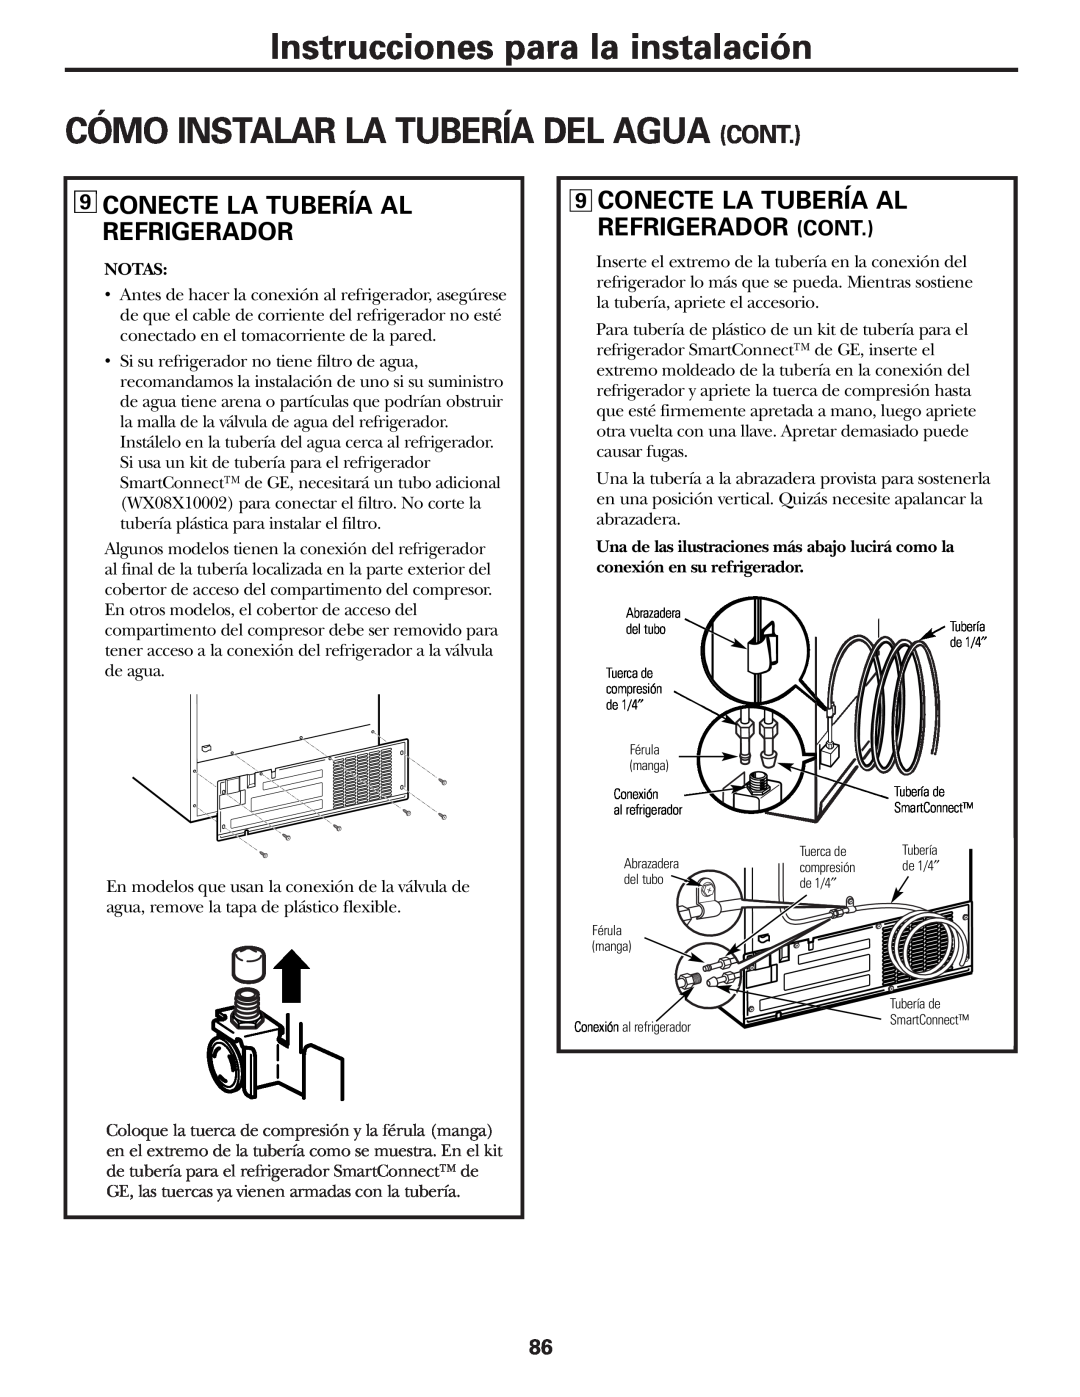 GE 25 installation instructions Conecte La Tubería Al Refrigerador Cont, Instrucciones para la instalación 